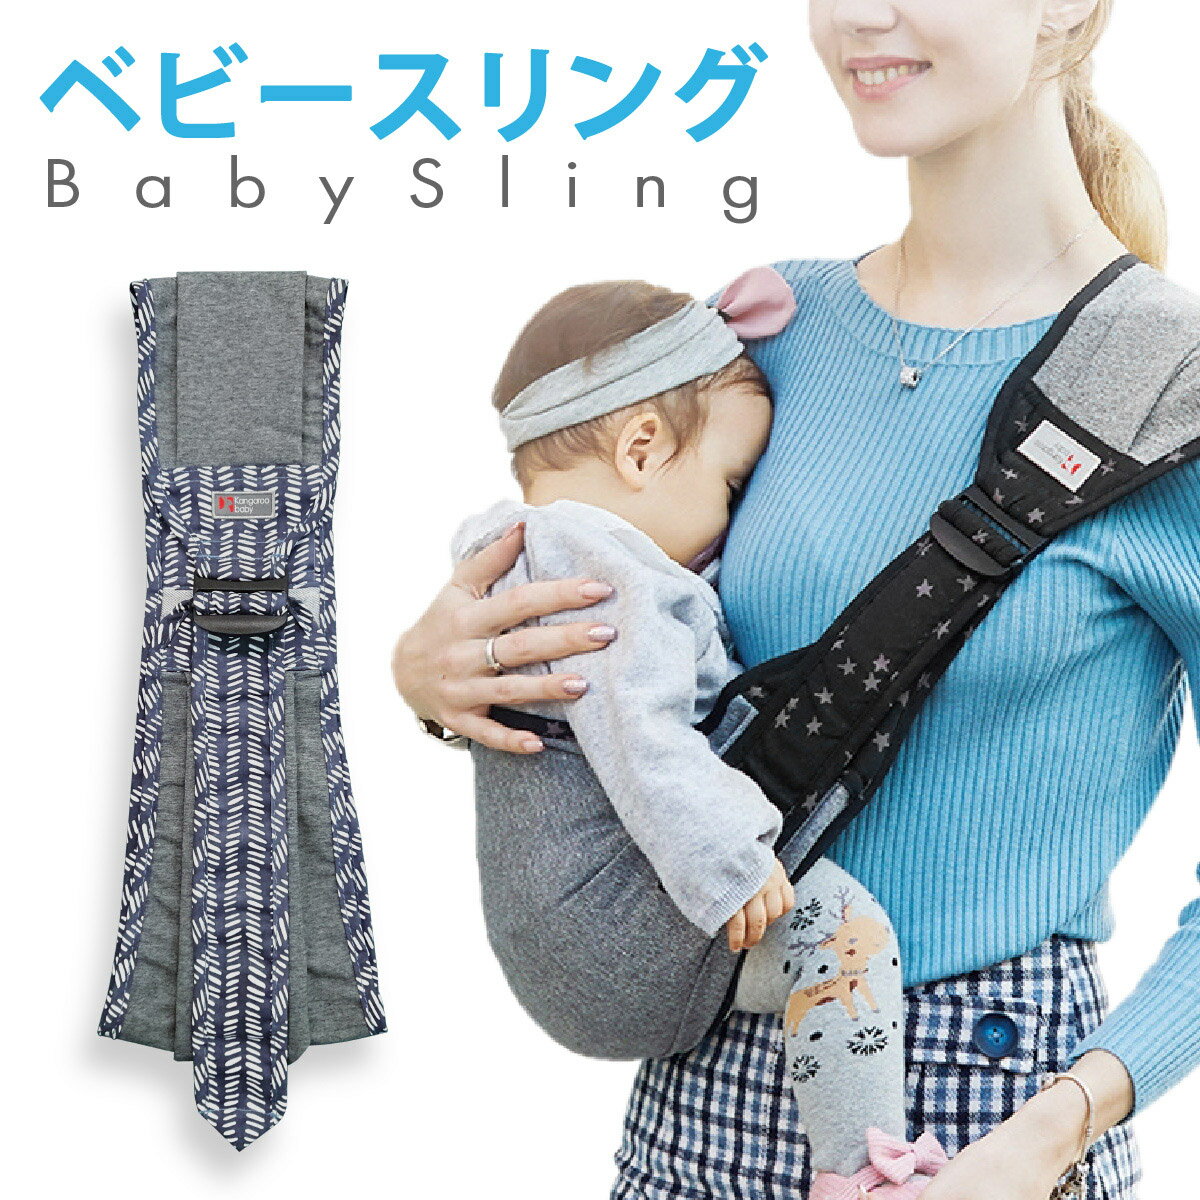 ベビースリング赤ちゃんを片手で支えられるワンショルダータイプお父さん、お母さんの抱っこする負担を軽減。ワンショルダーだから片手を空けることができます。赤ちゃんのお尻をしっかりカバー、手足を動かしても安心して抱っこできる。負担を肩全体で分散さ...